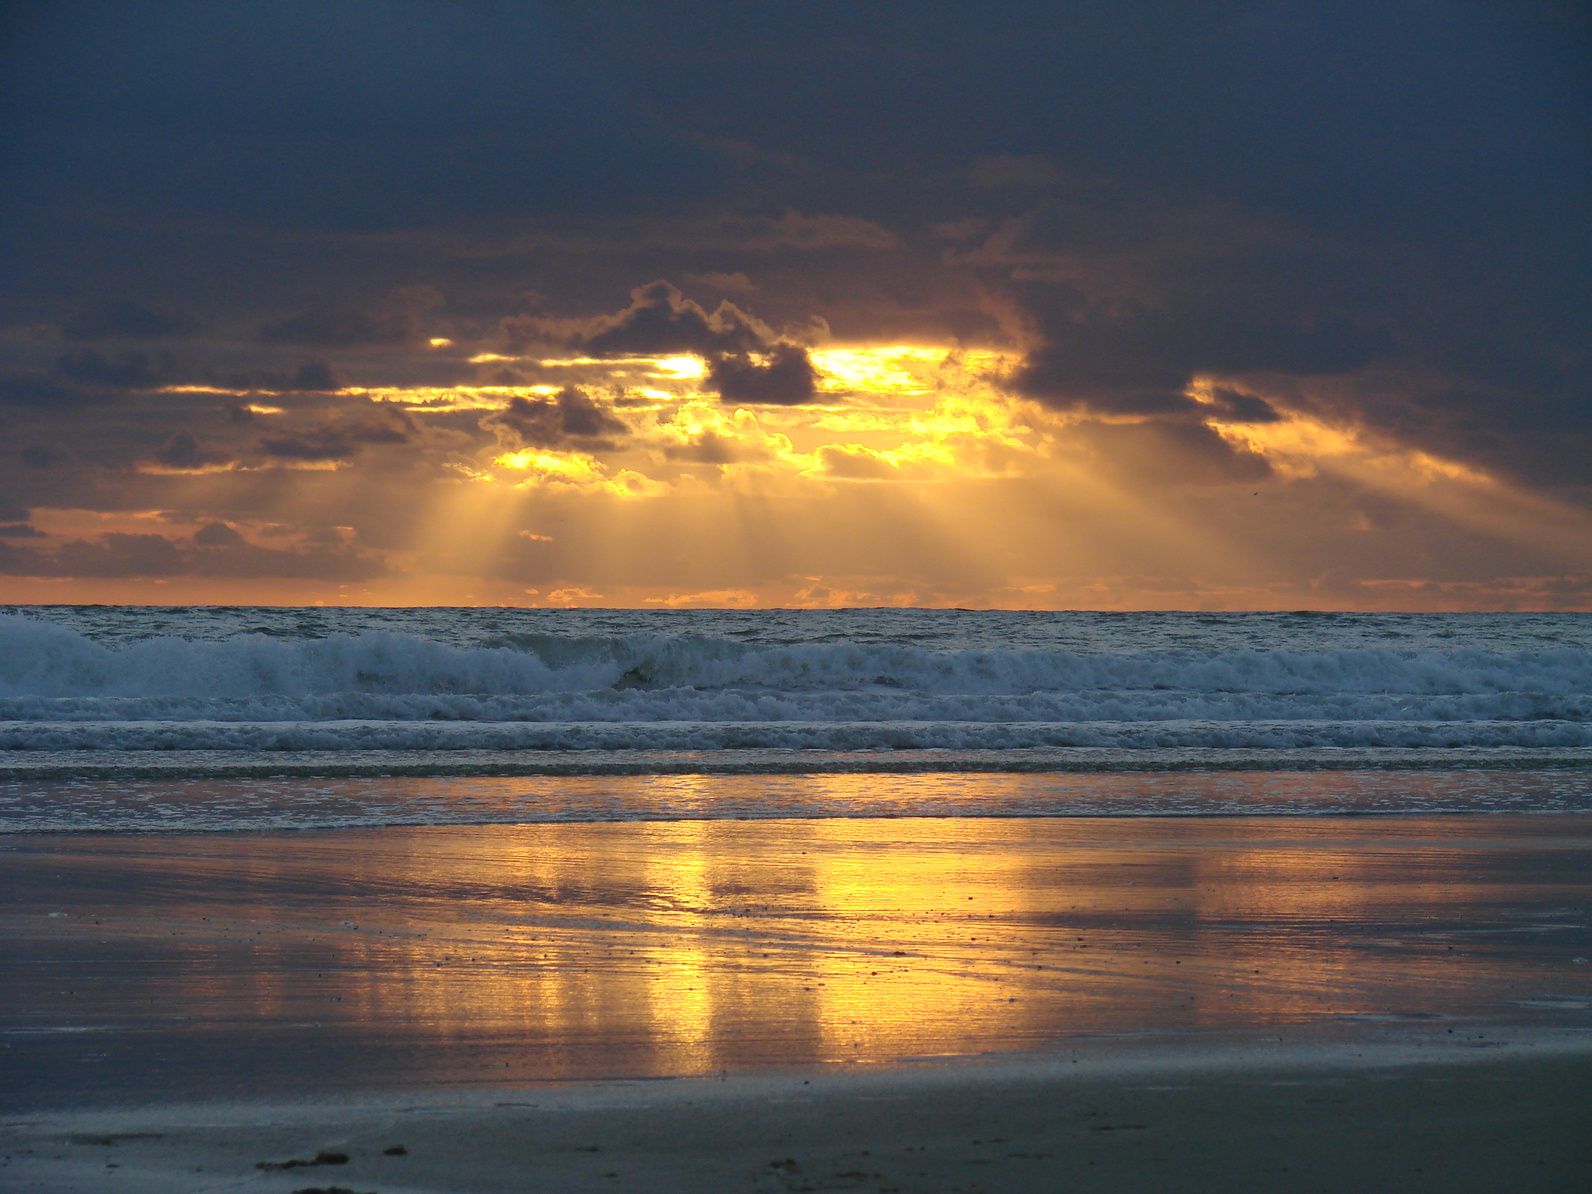 Sunrise At The Beach Quotes. QuotesGram